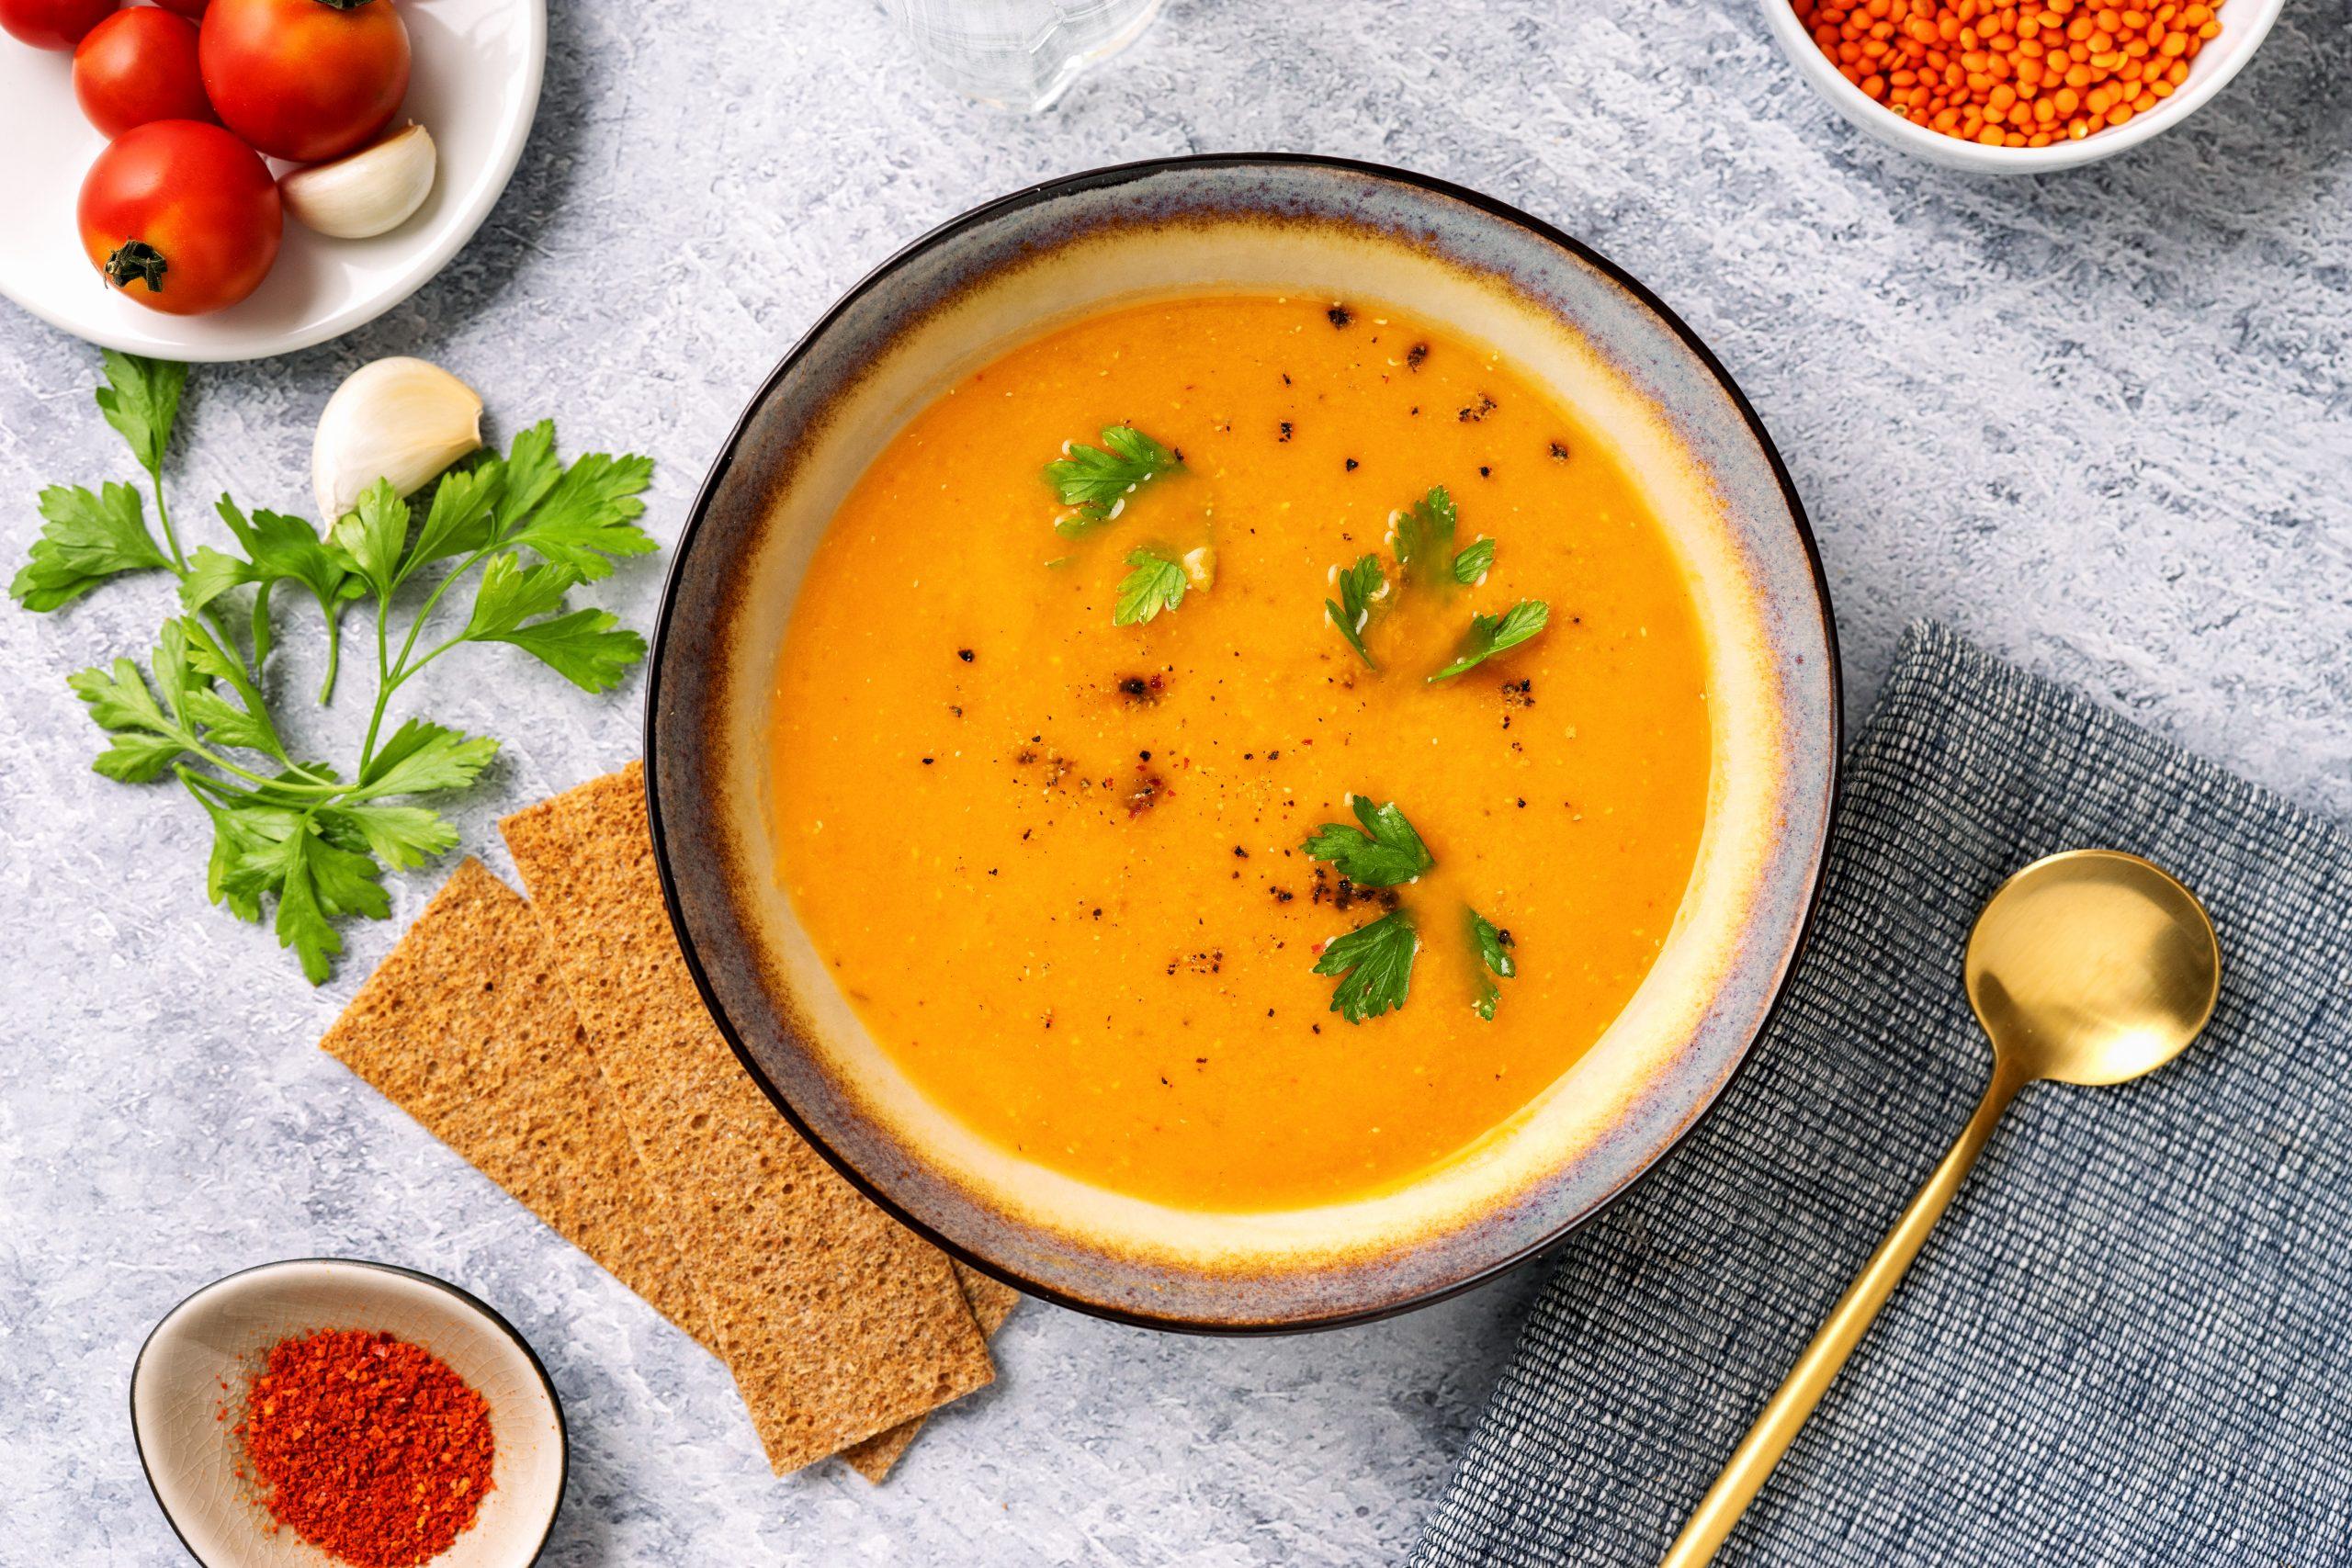 دستور تهیه لذیذترین سوپ رژیمی به سبک رستورانی! | طرز تهیه سوپ دال عدس